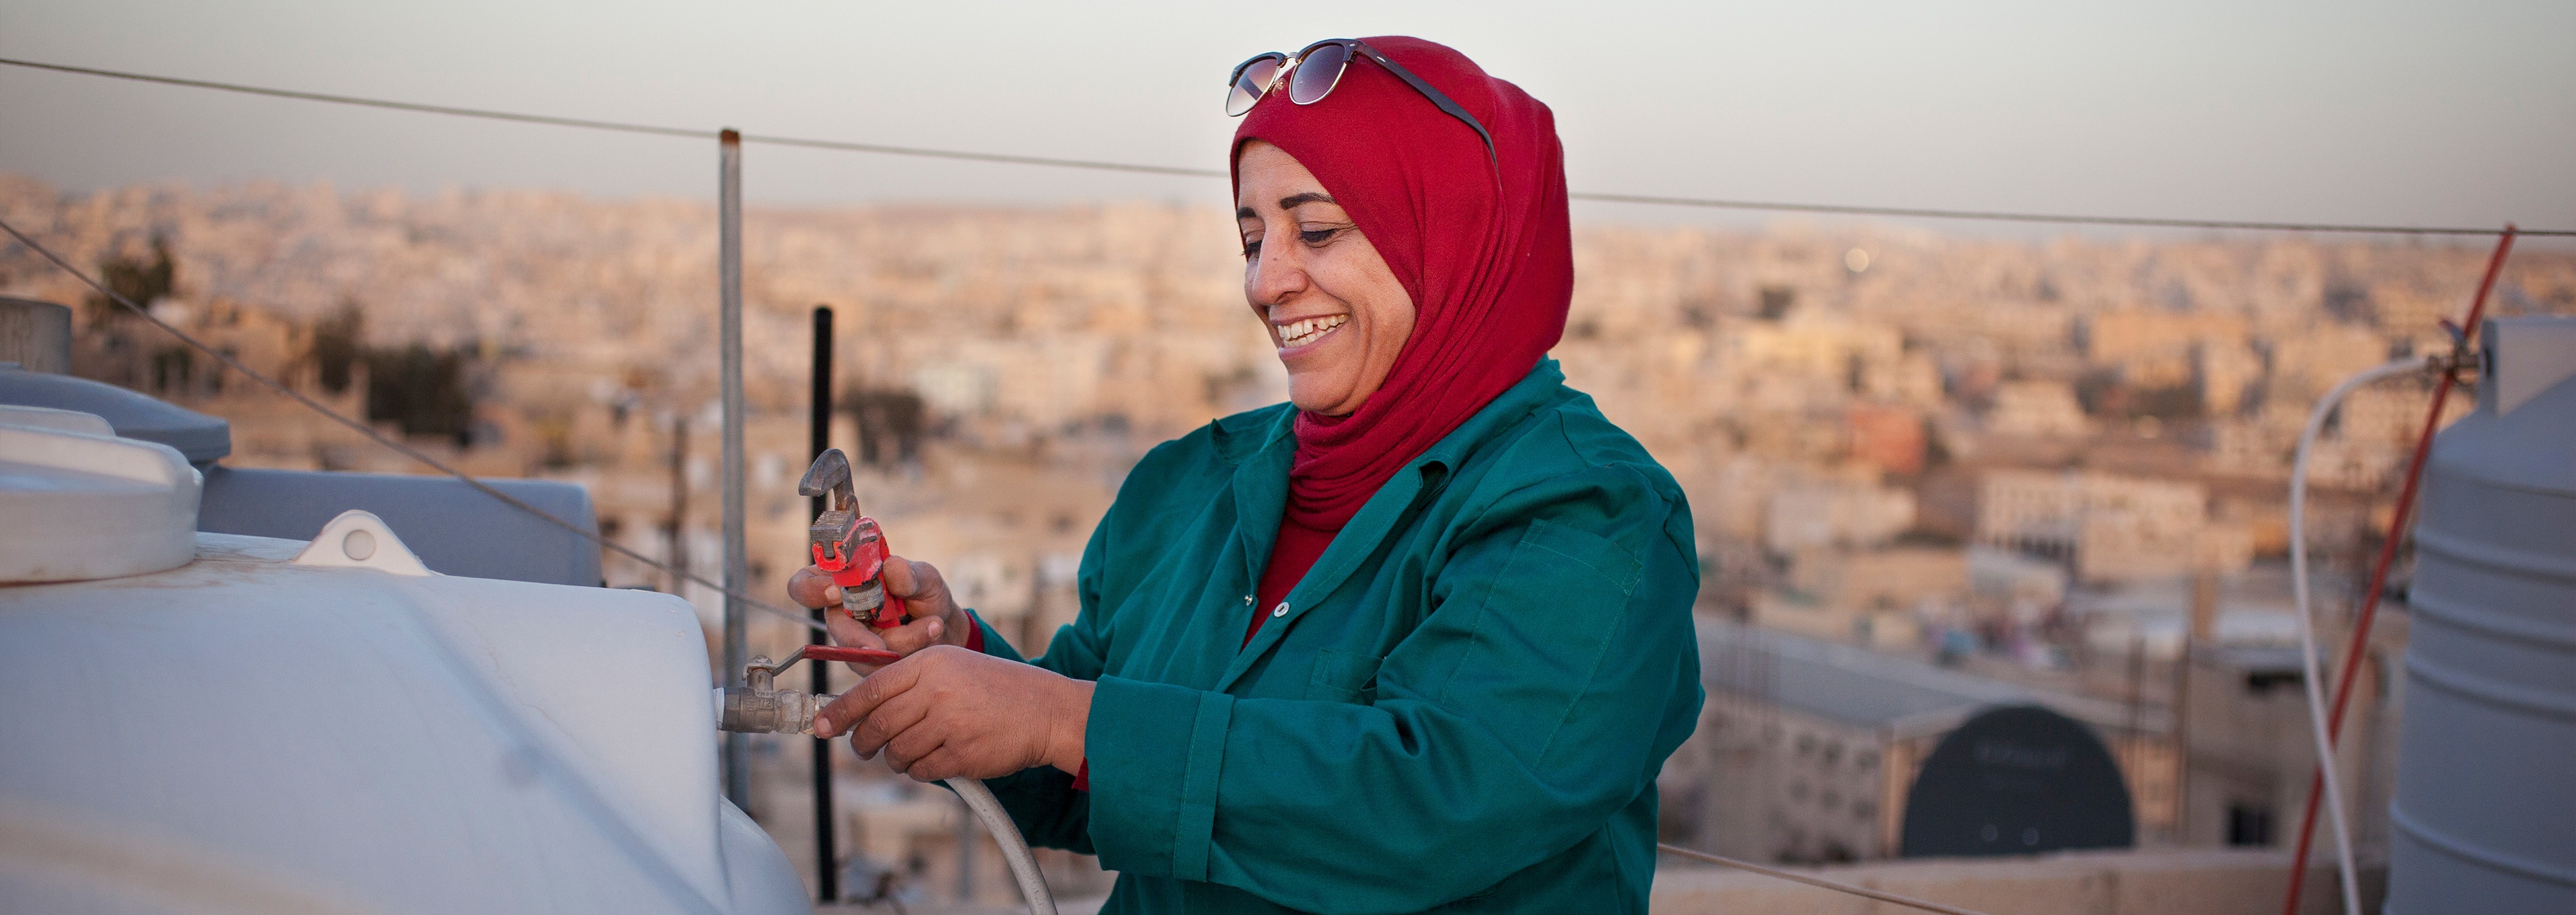 LVRSustainable mit Oxfam: Eine bessere Gesellschaft durch stärkere Frauen | Mariams Geschichte